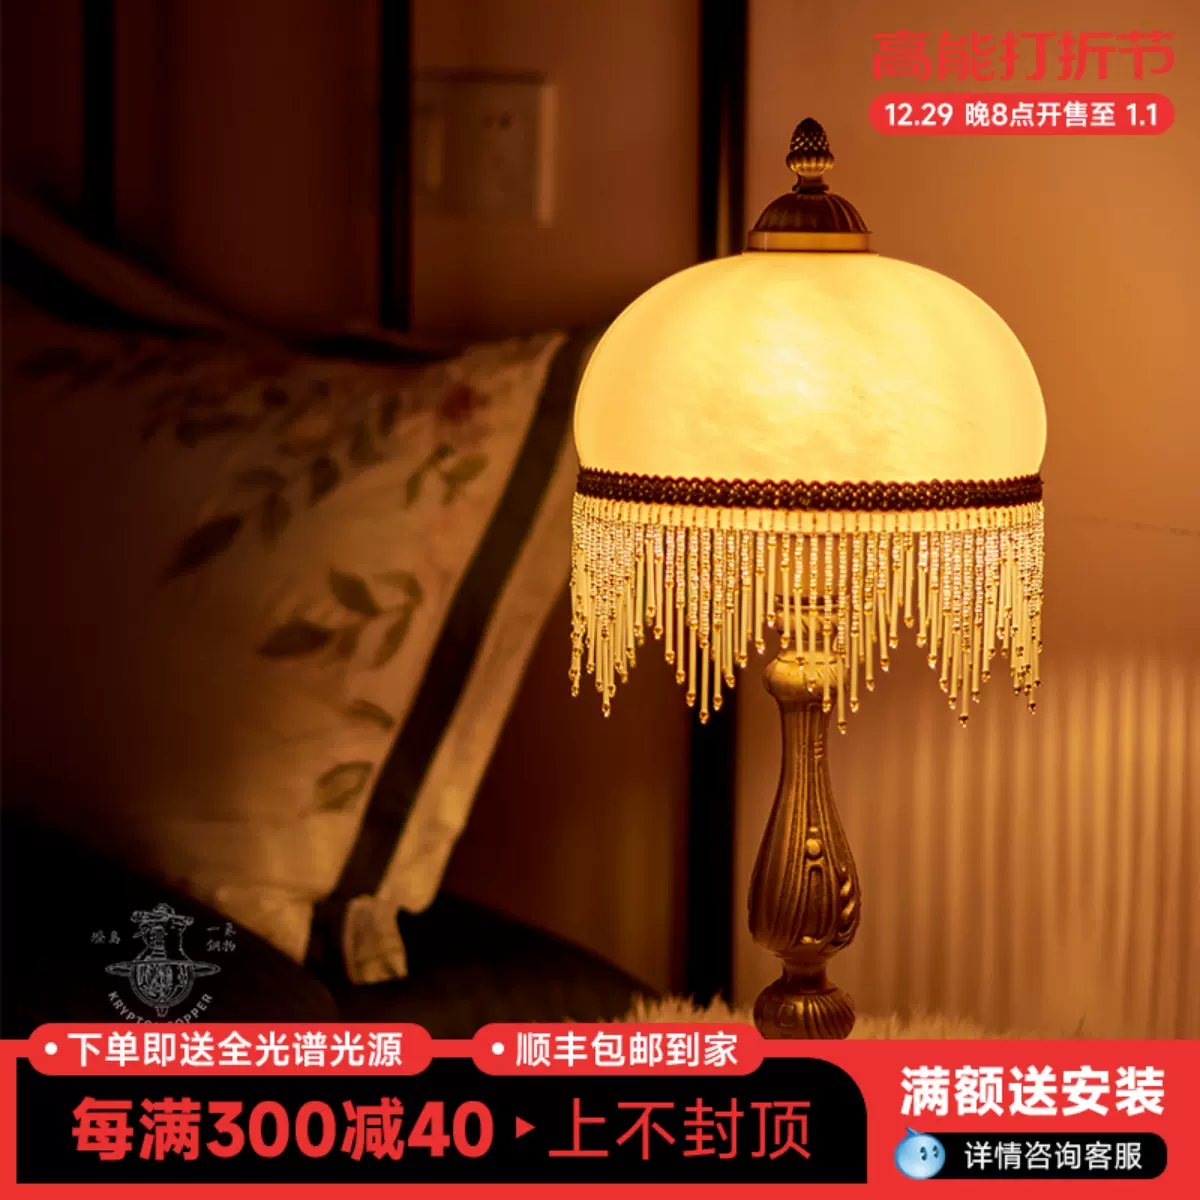 灯岛复古法式西洋古董台灯中古日式欧式床头客厅书房全铜装饰灯-Taobao